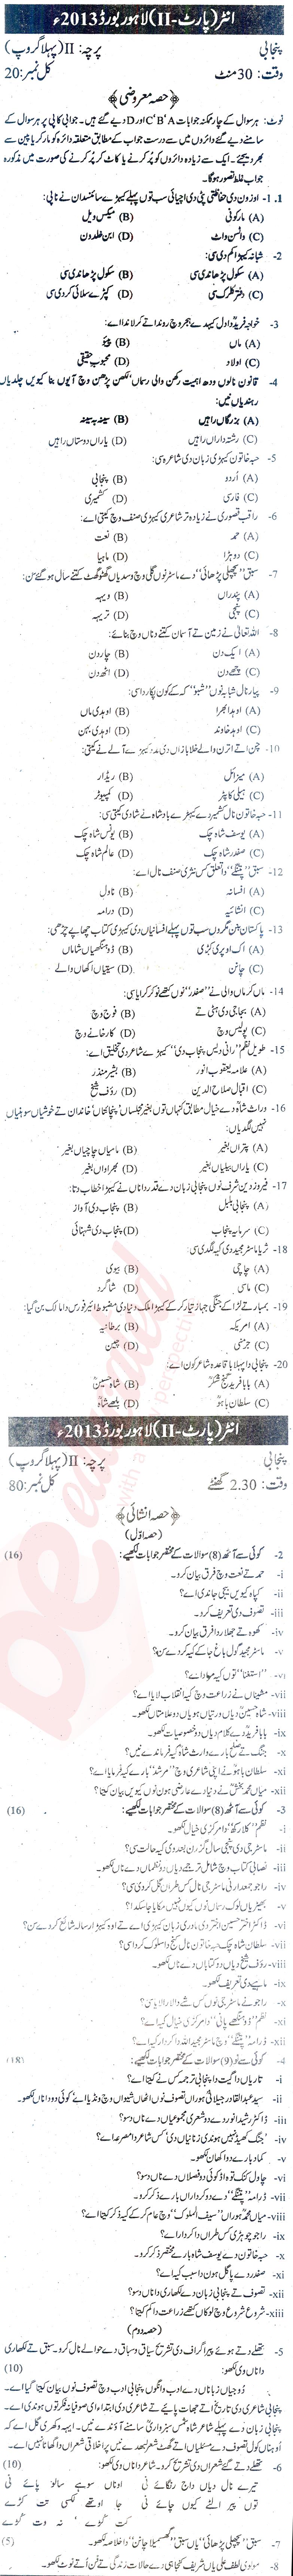 Punjabi FA Part 2 Past Paper Group 1 BISE Lahore 2013